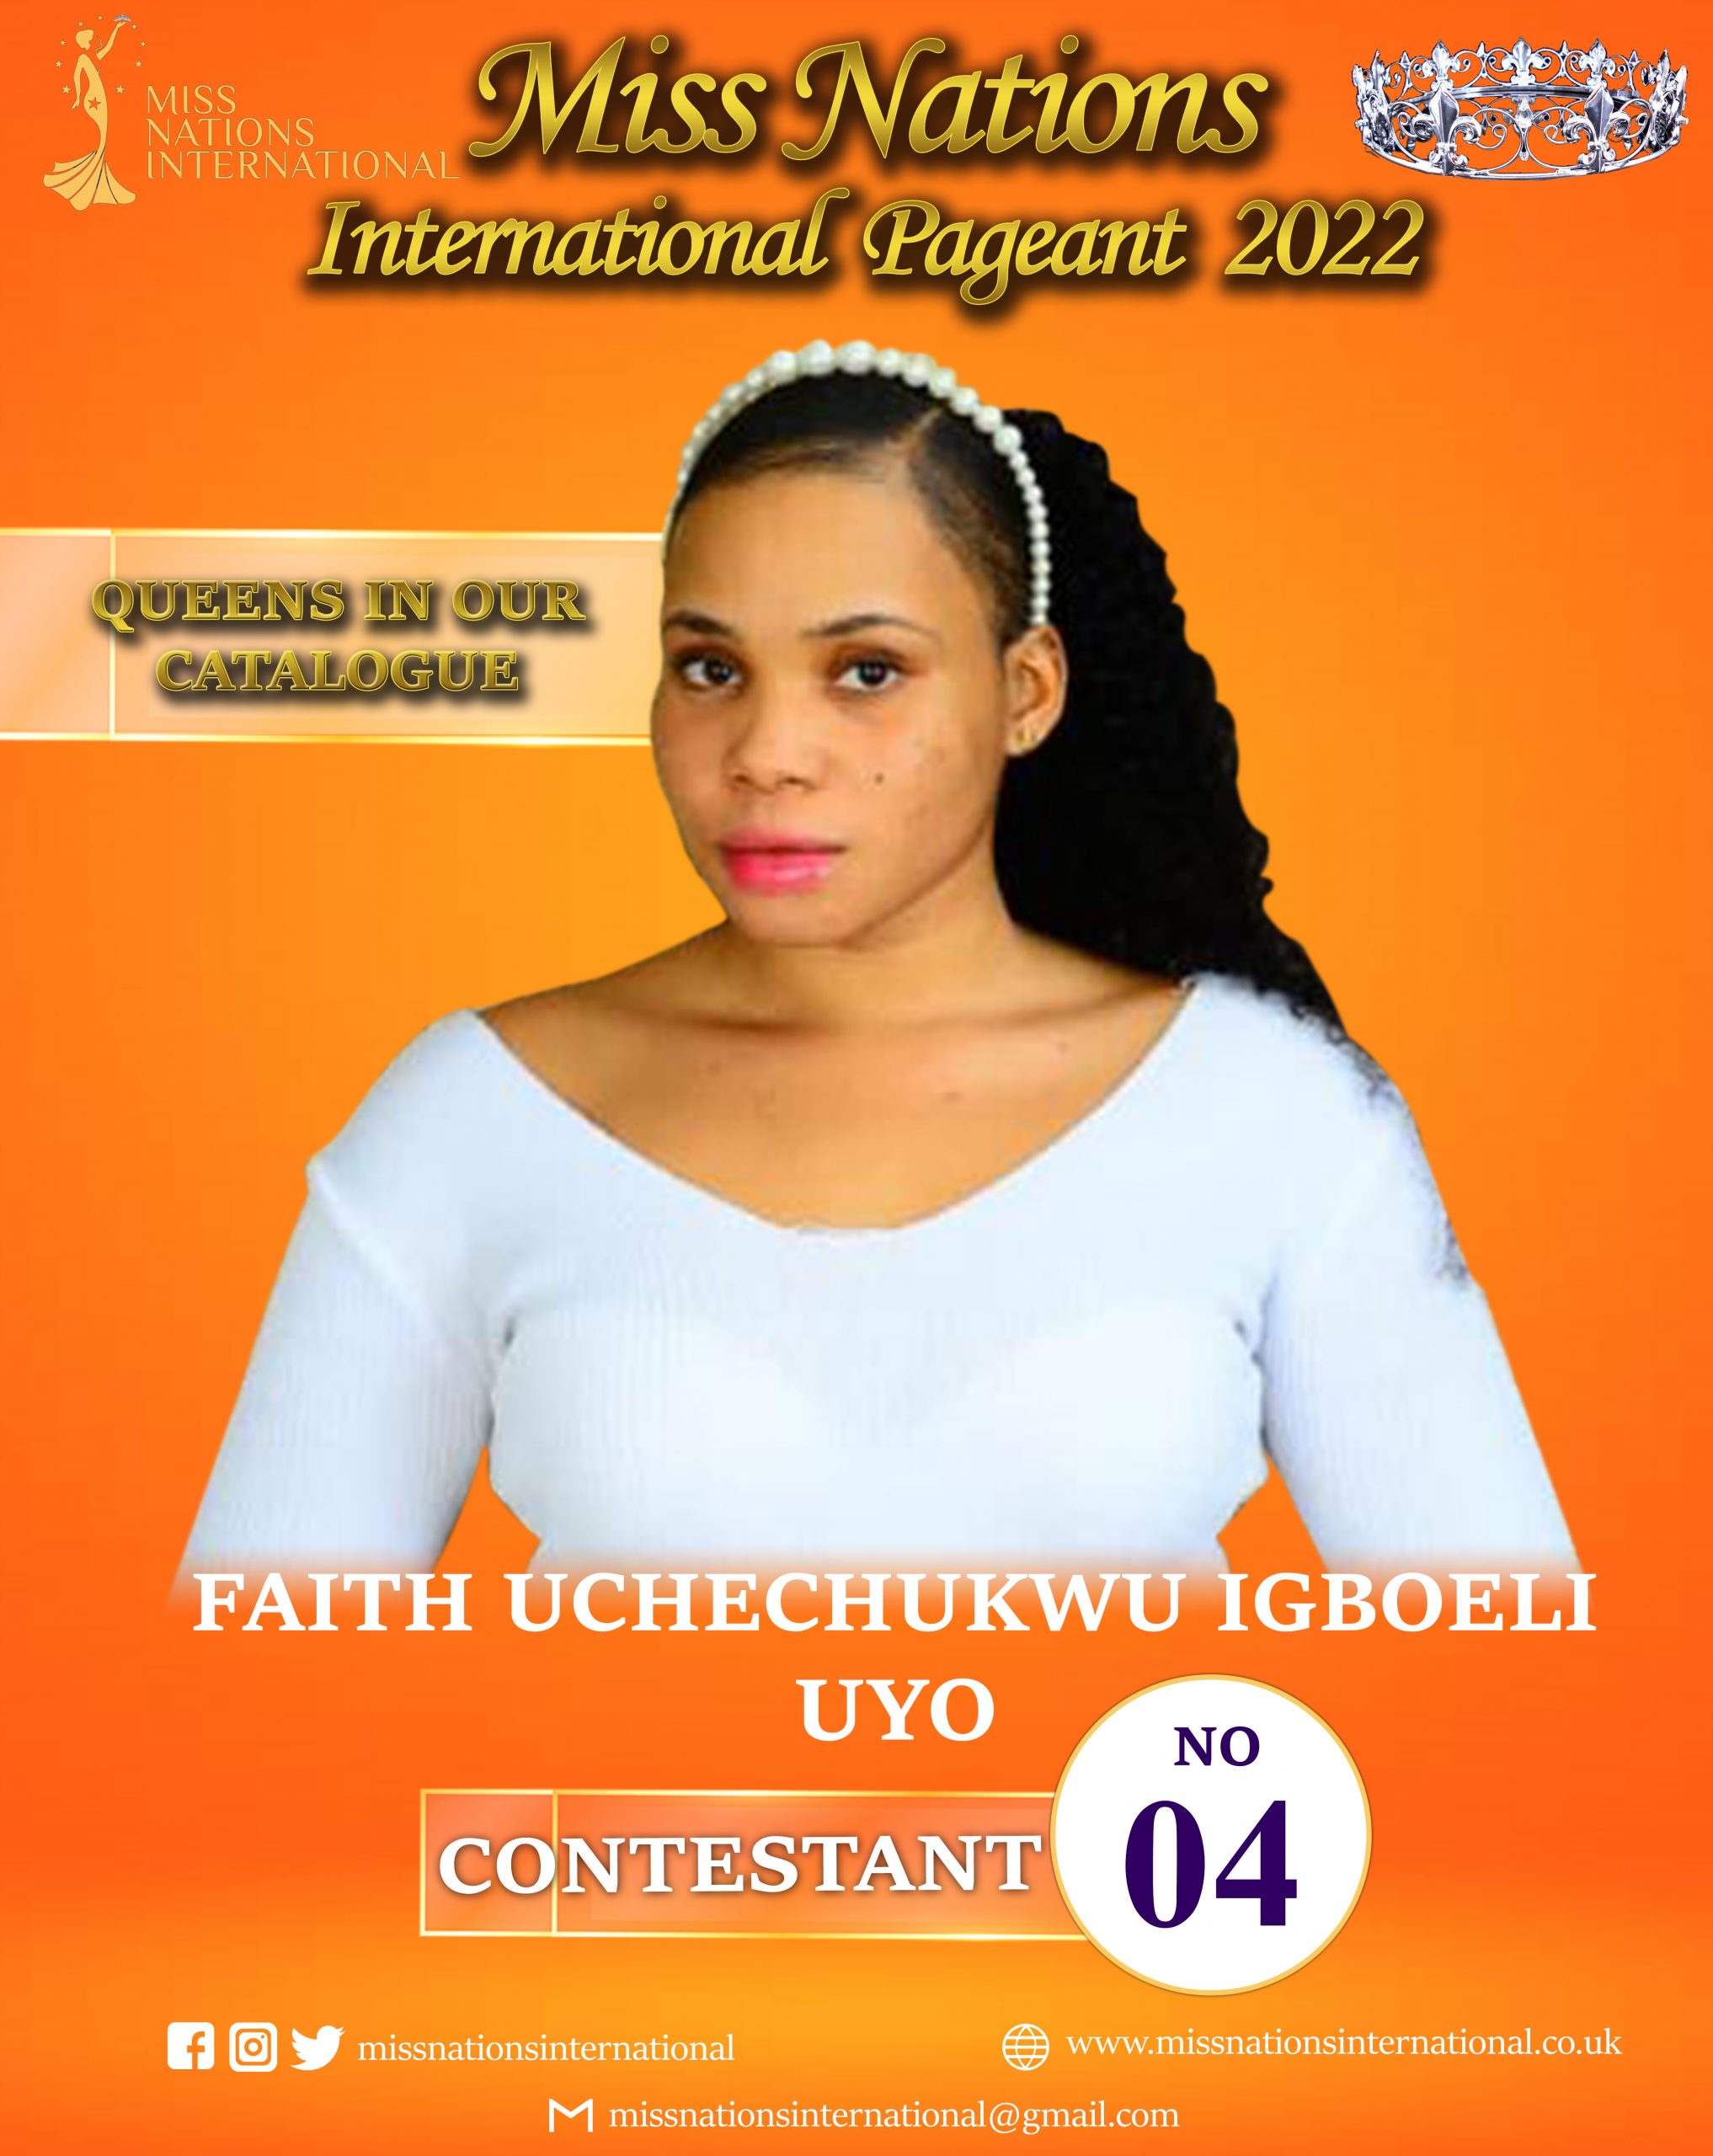 Faith Uchechukwu Igboeli